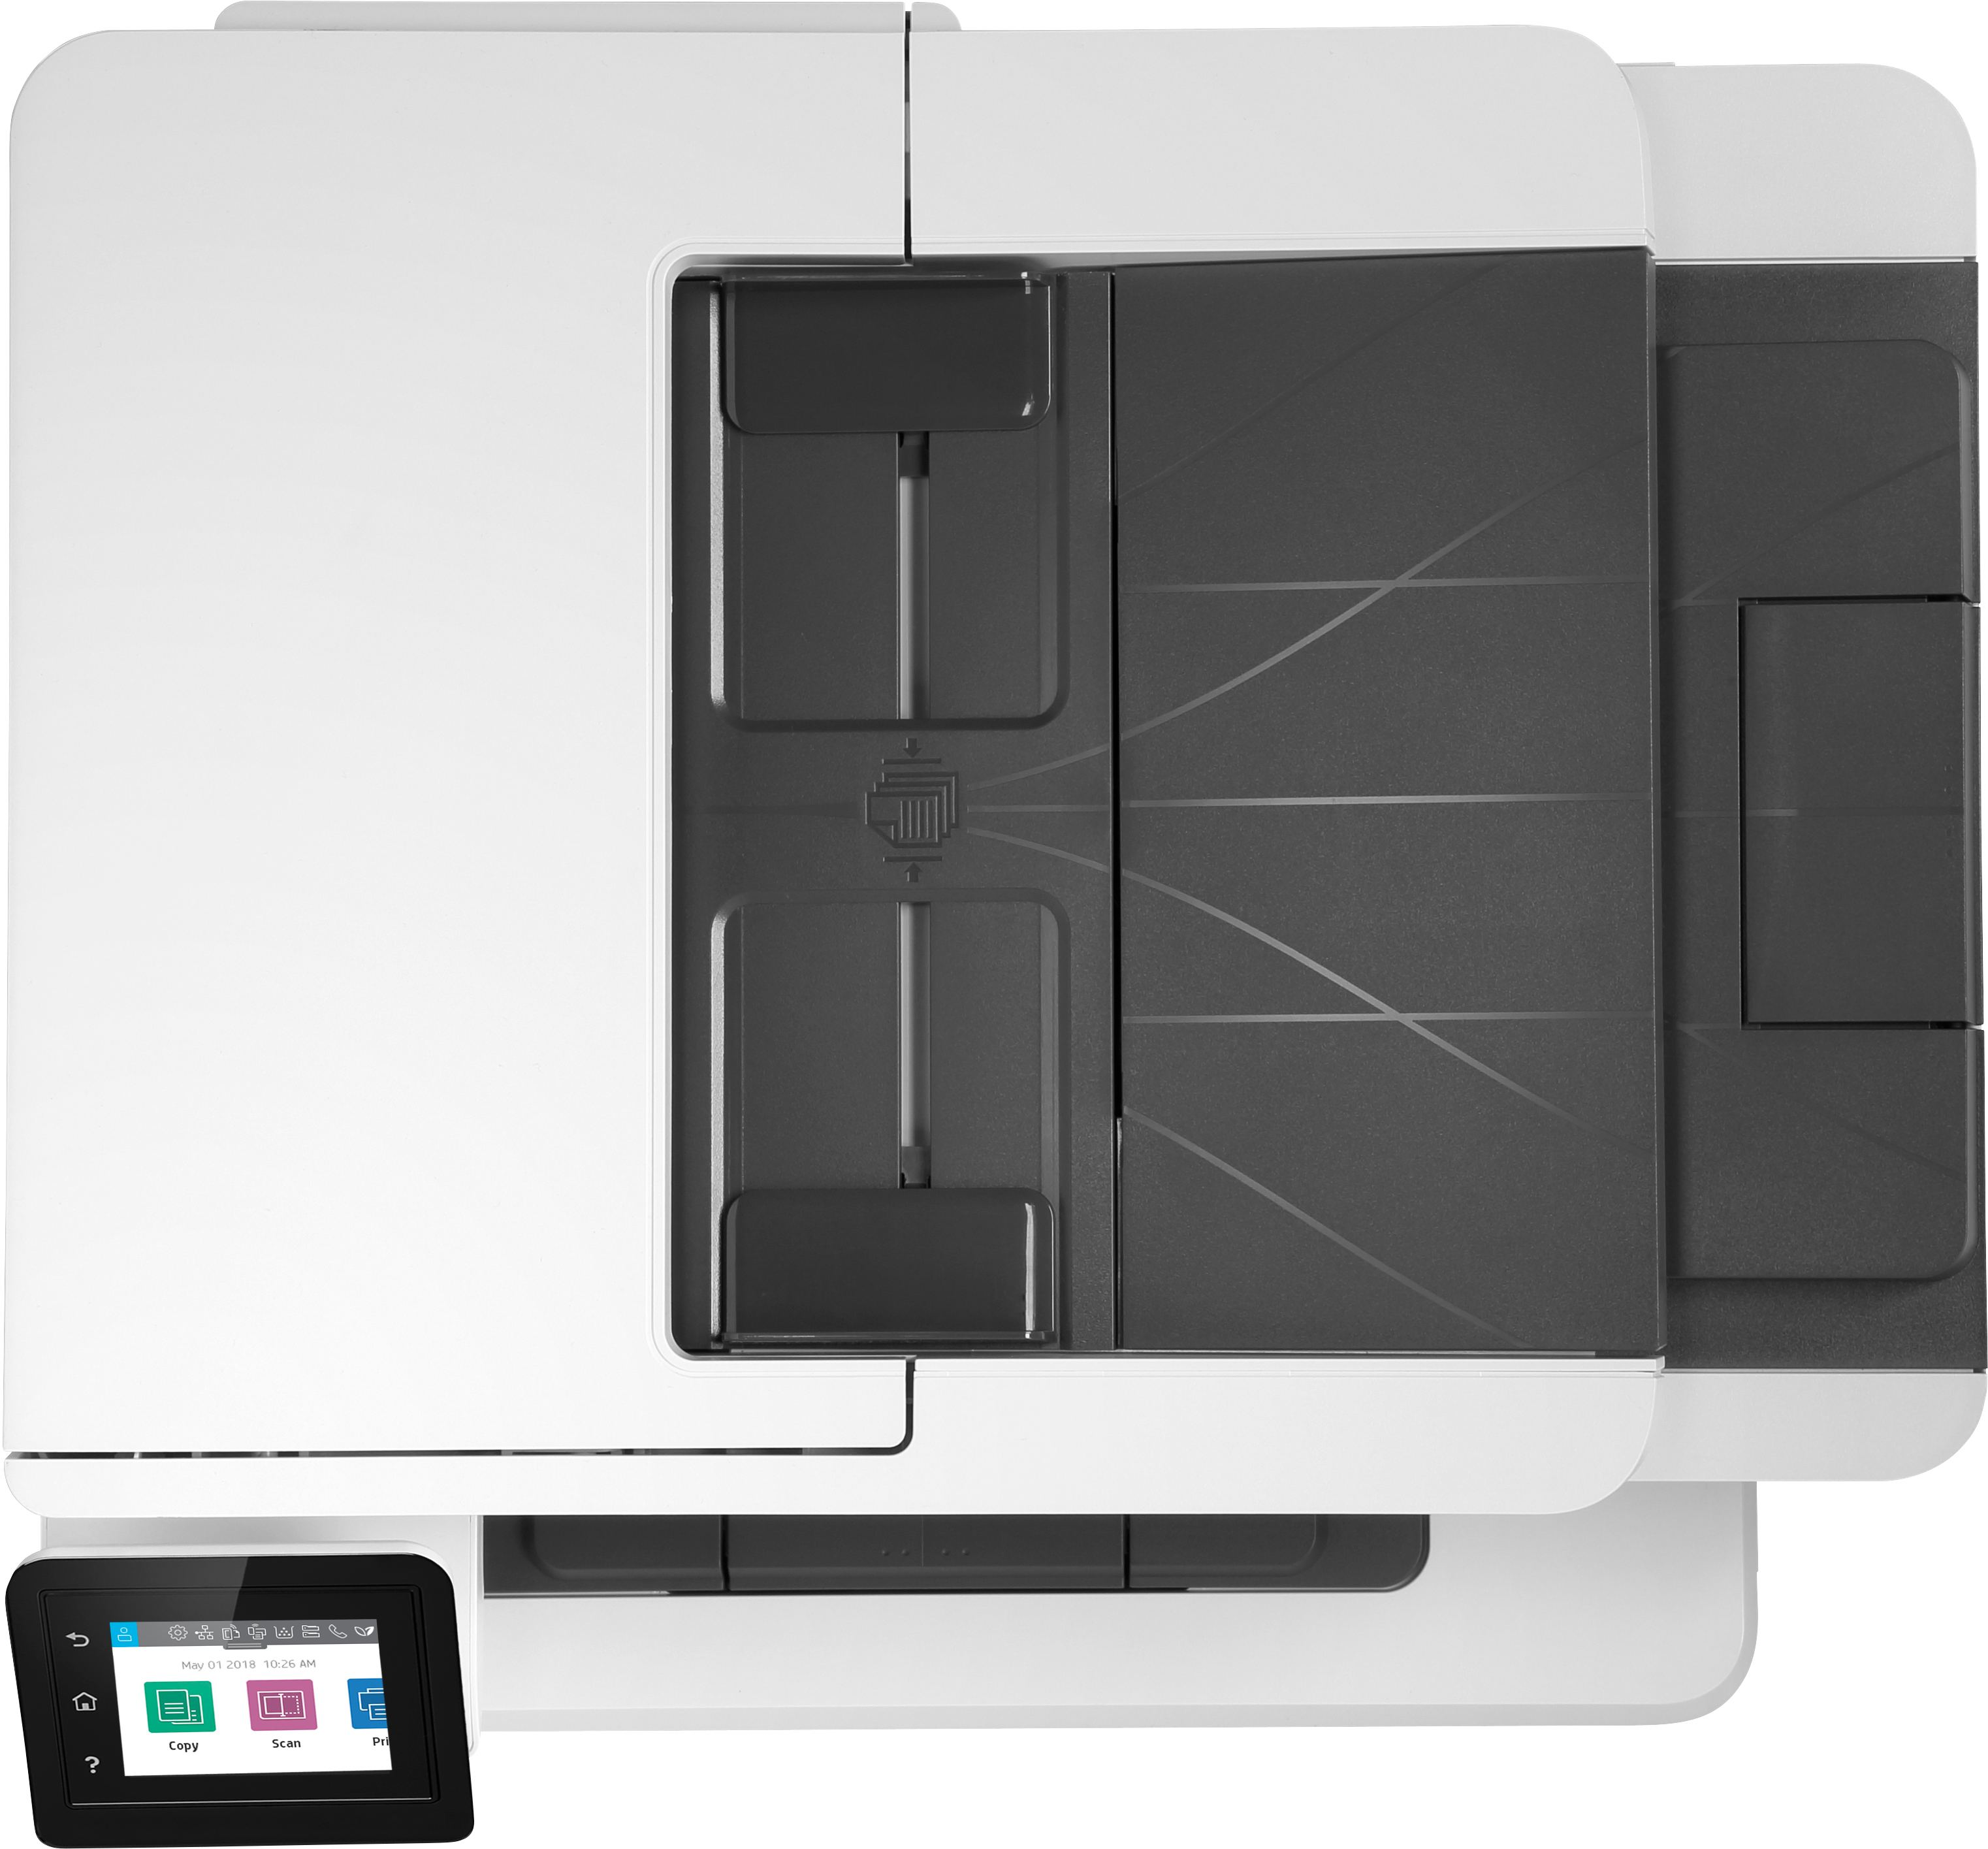 HP LaserJet Pro Stampante multifunzione M428fdw, Stampa, copia, scansione, fax, e-mail, scansione verso e-mail; fronte/retro; [W1A30A]